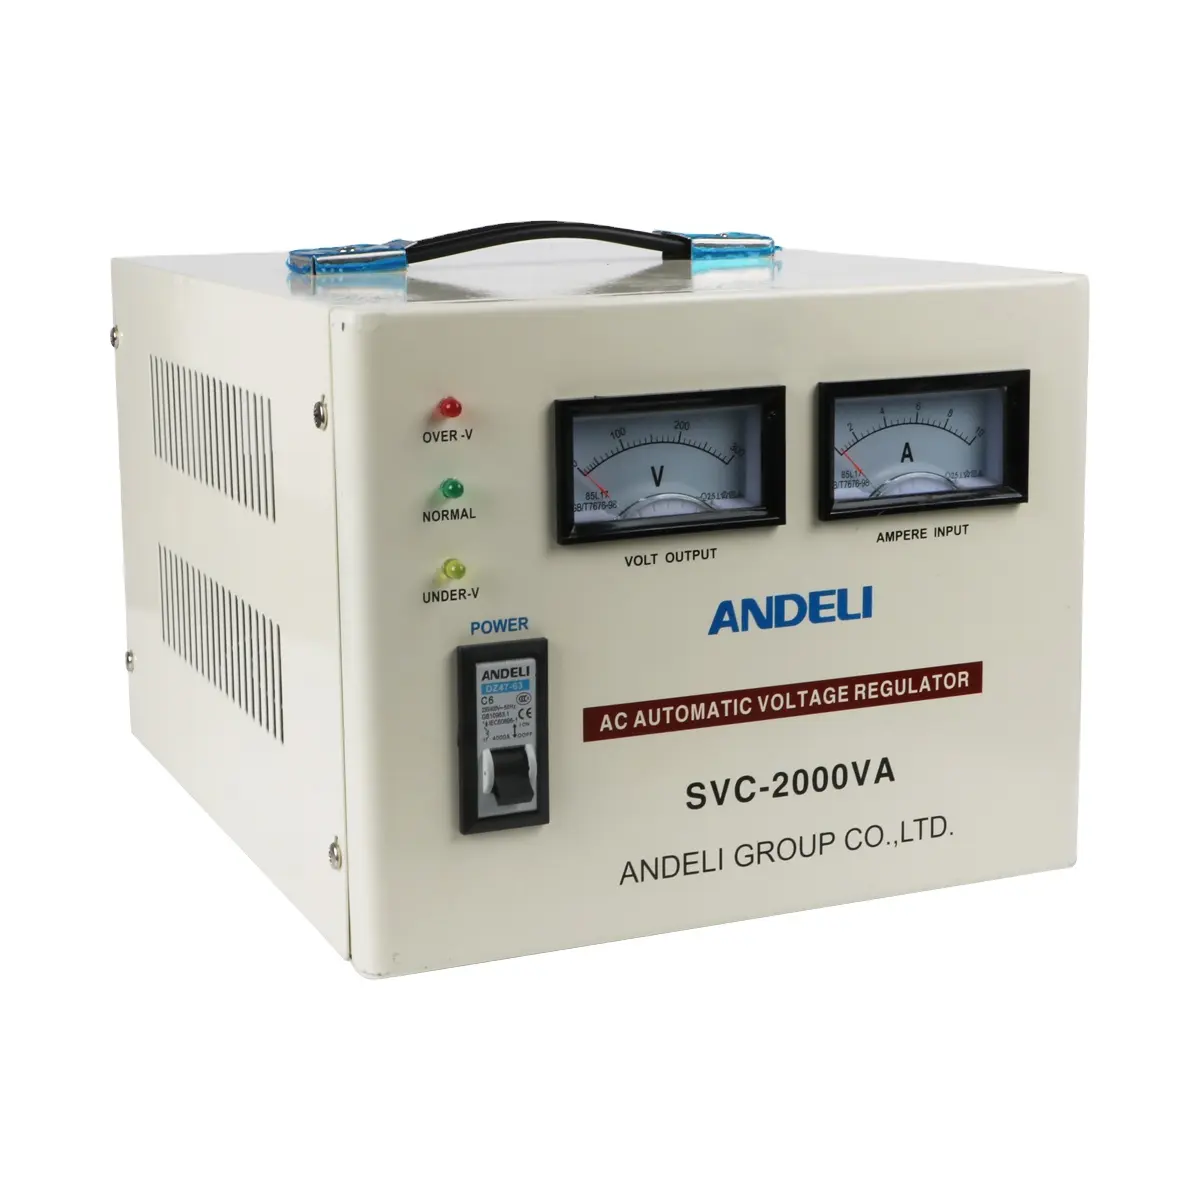 ANDELI กลุ่ม SVC-2000VA ควบคุมแรงดันไฟฟ้า220V